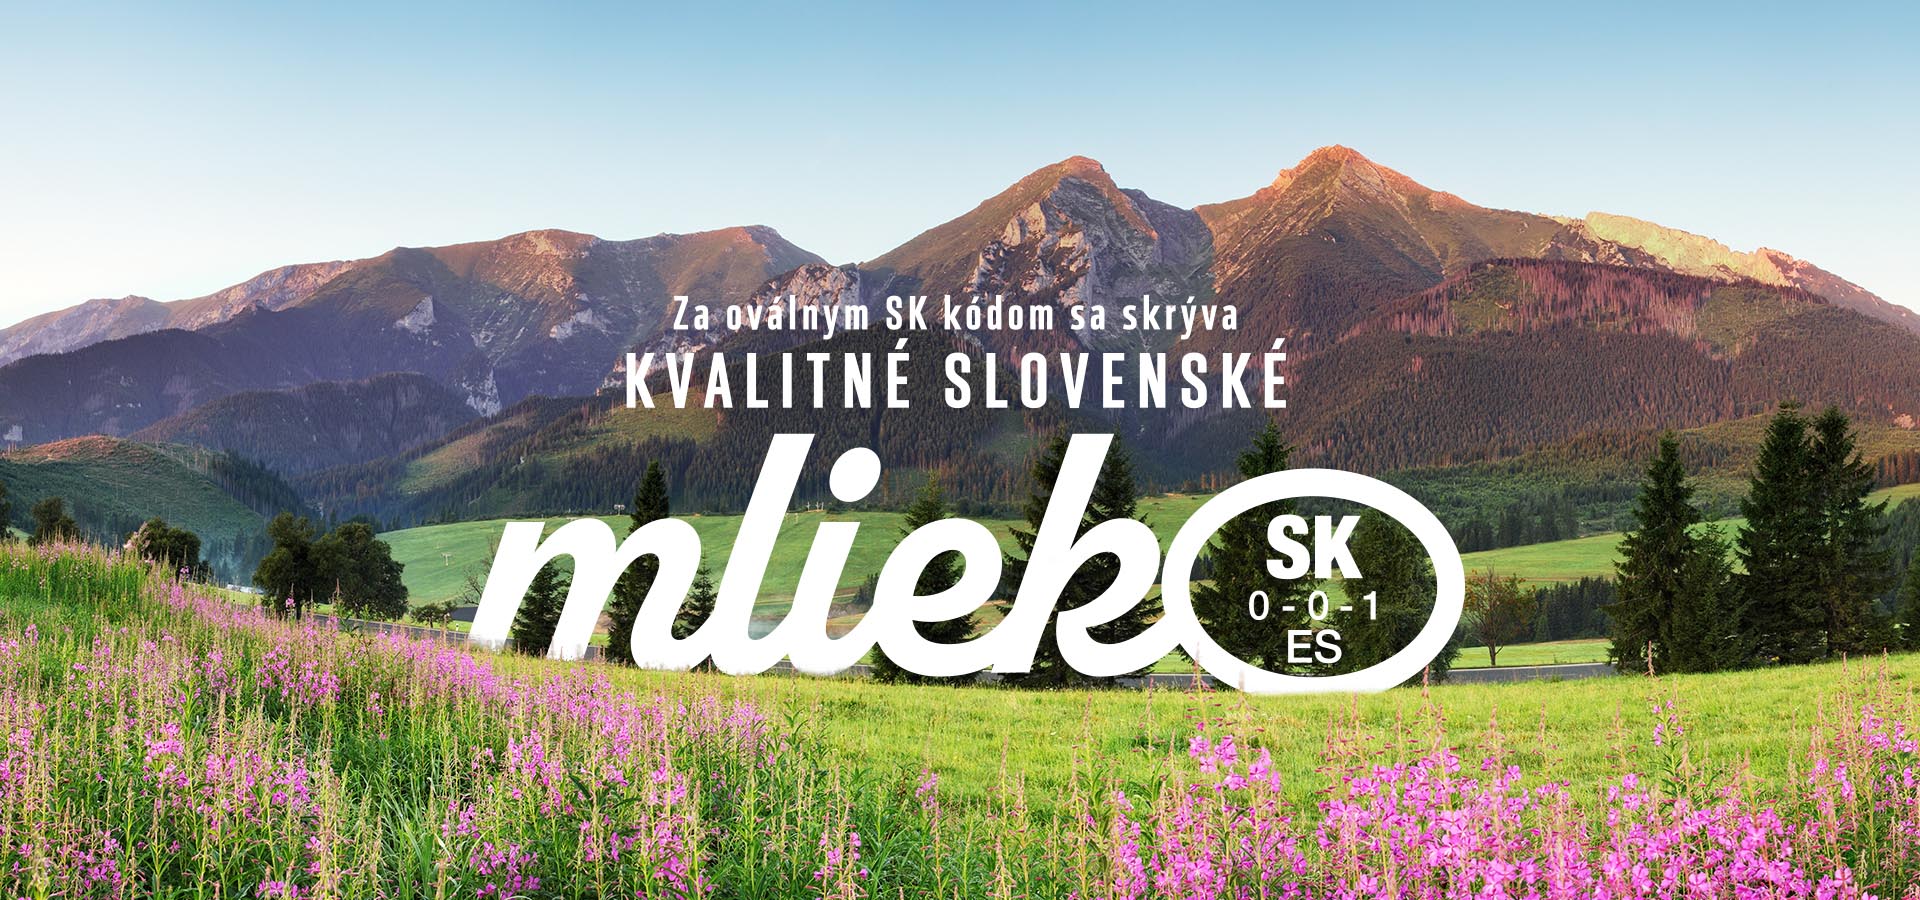 Za oválnym SK kódom sa skrýva kvalitné slovenské mlieko